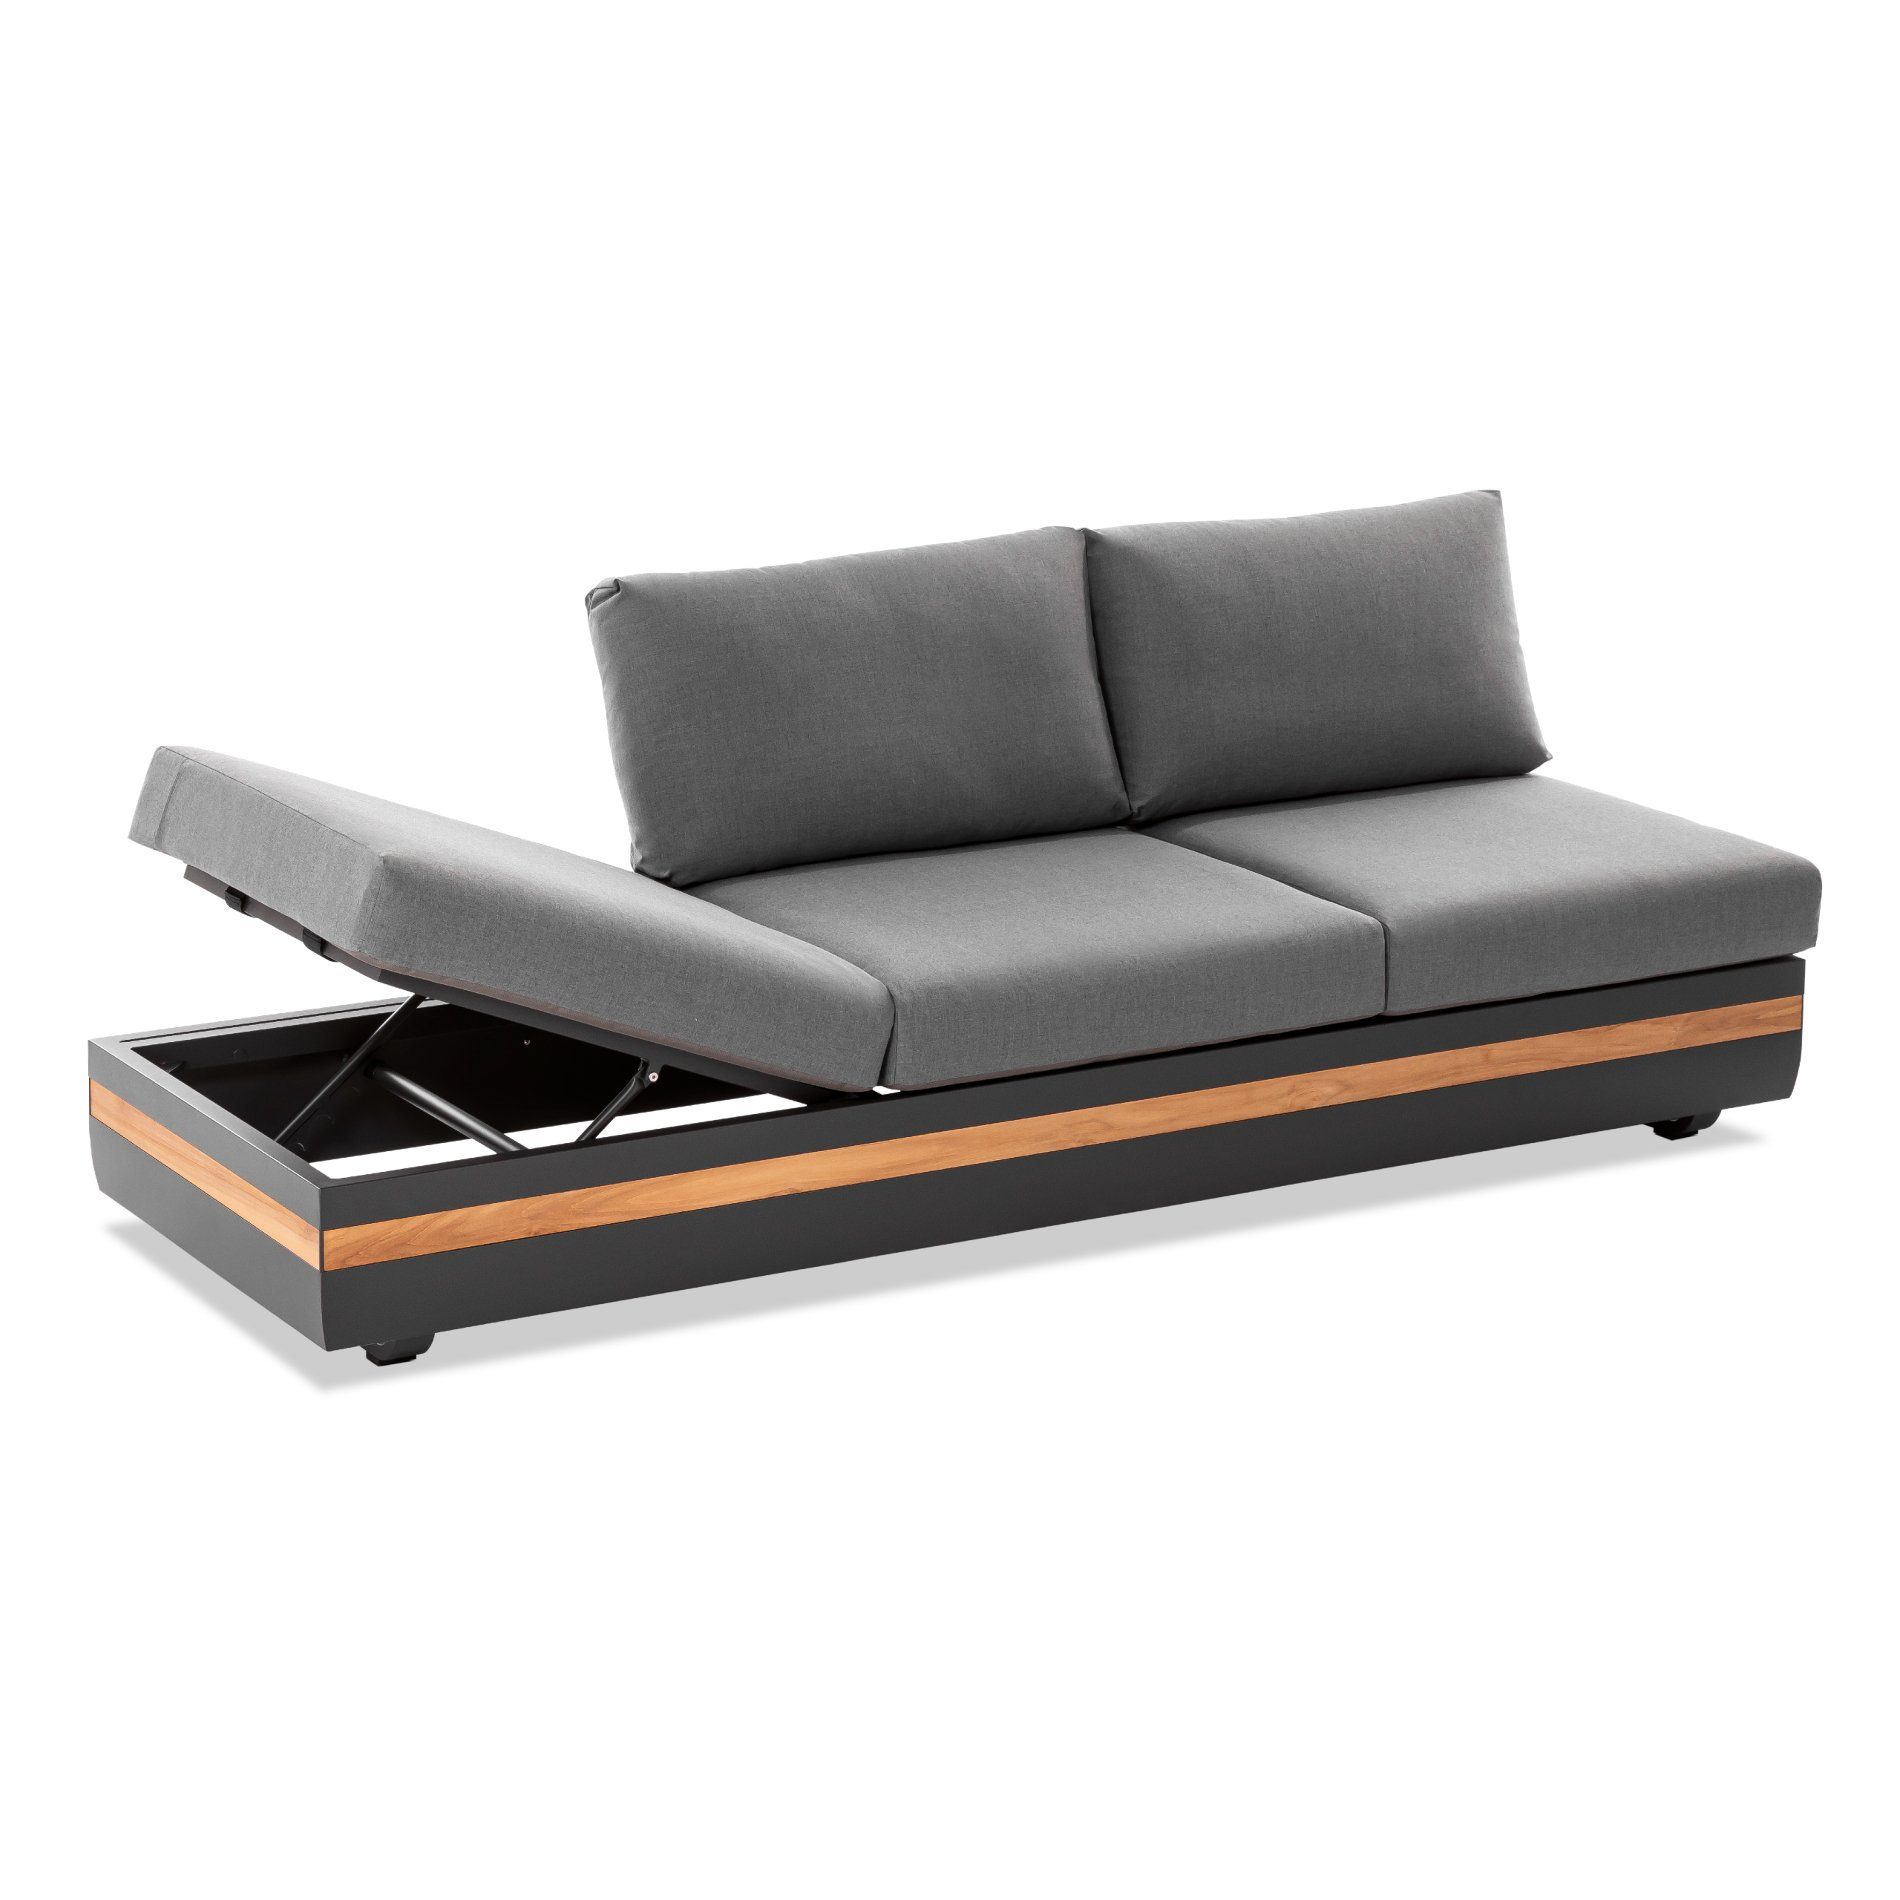 Niehoff "Volano" 3-Sitzer Sofa mit beidseitig 4-fach verstellbarem Seitenteil, Gestell Aluminium anthrazit mit Teakholz-Einlage, Polster Outdoor-Gewebe Canvas Heather anthrazit